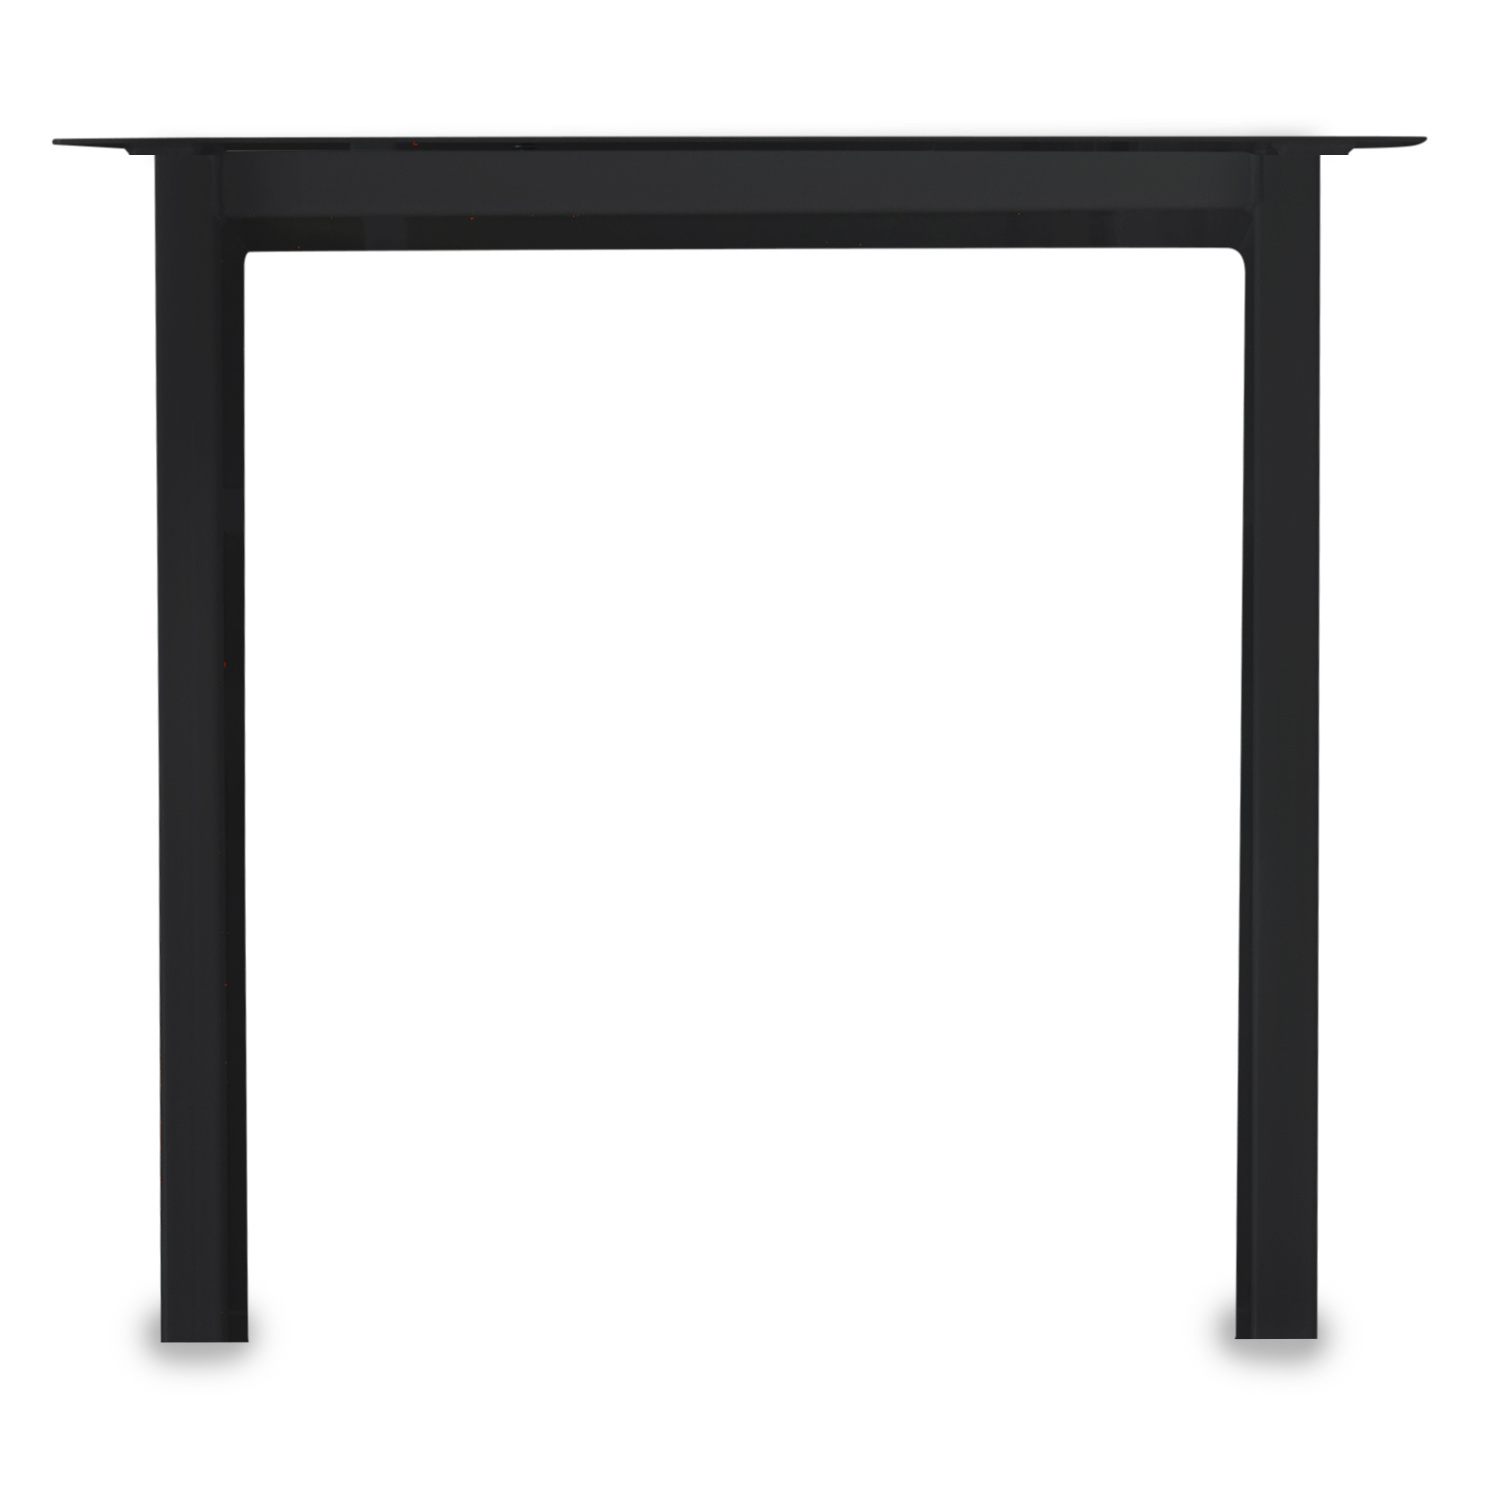  Tischbeine N Metall elegant SET (2 Stück) - 10x4 cm - 69-78 cm breit - 72 cm hoch - N-form Tischkufen / Tischgestell beschichtet - Schwarz